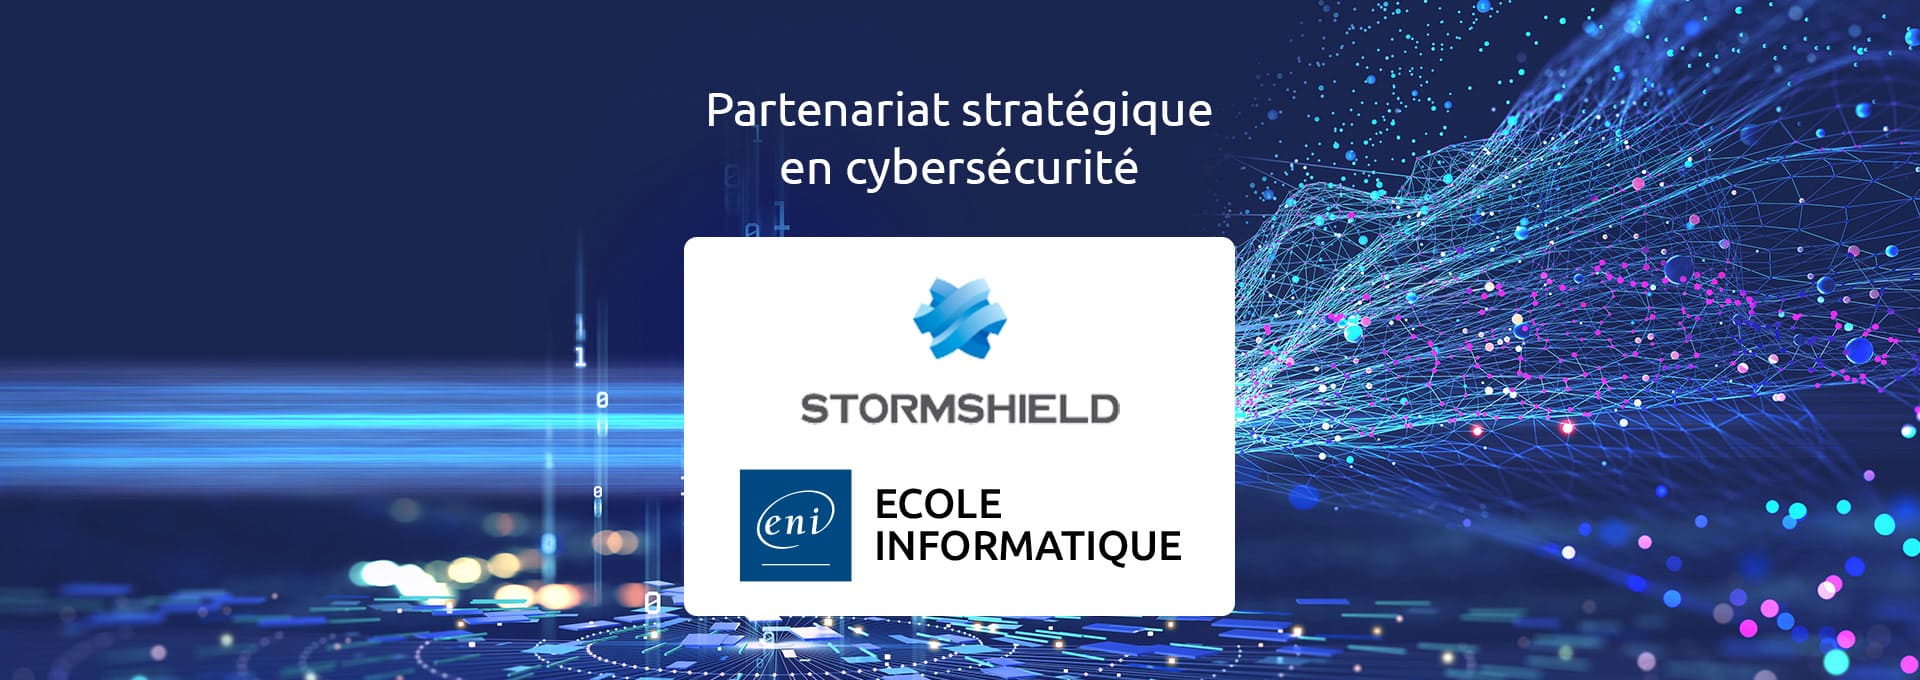 Partenariat entre ENI Ecole Informatique et Stormshield